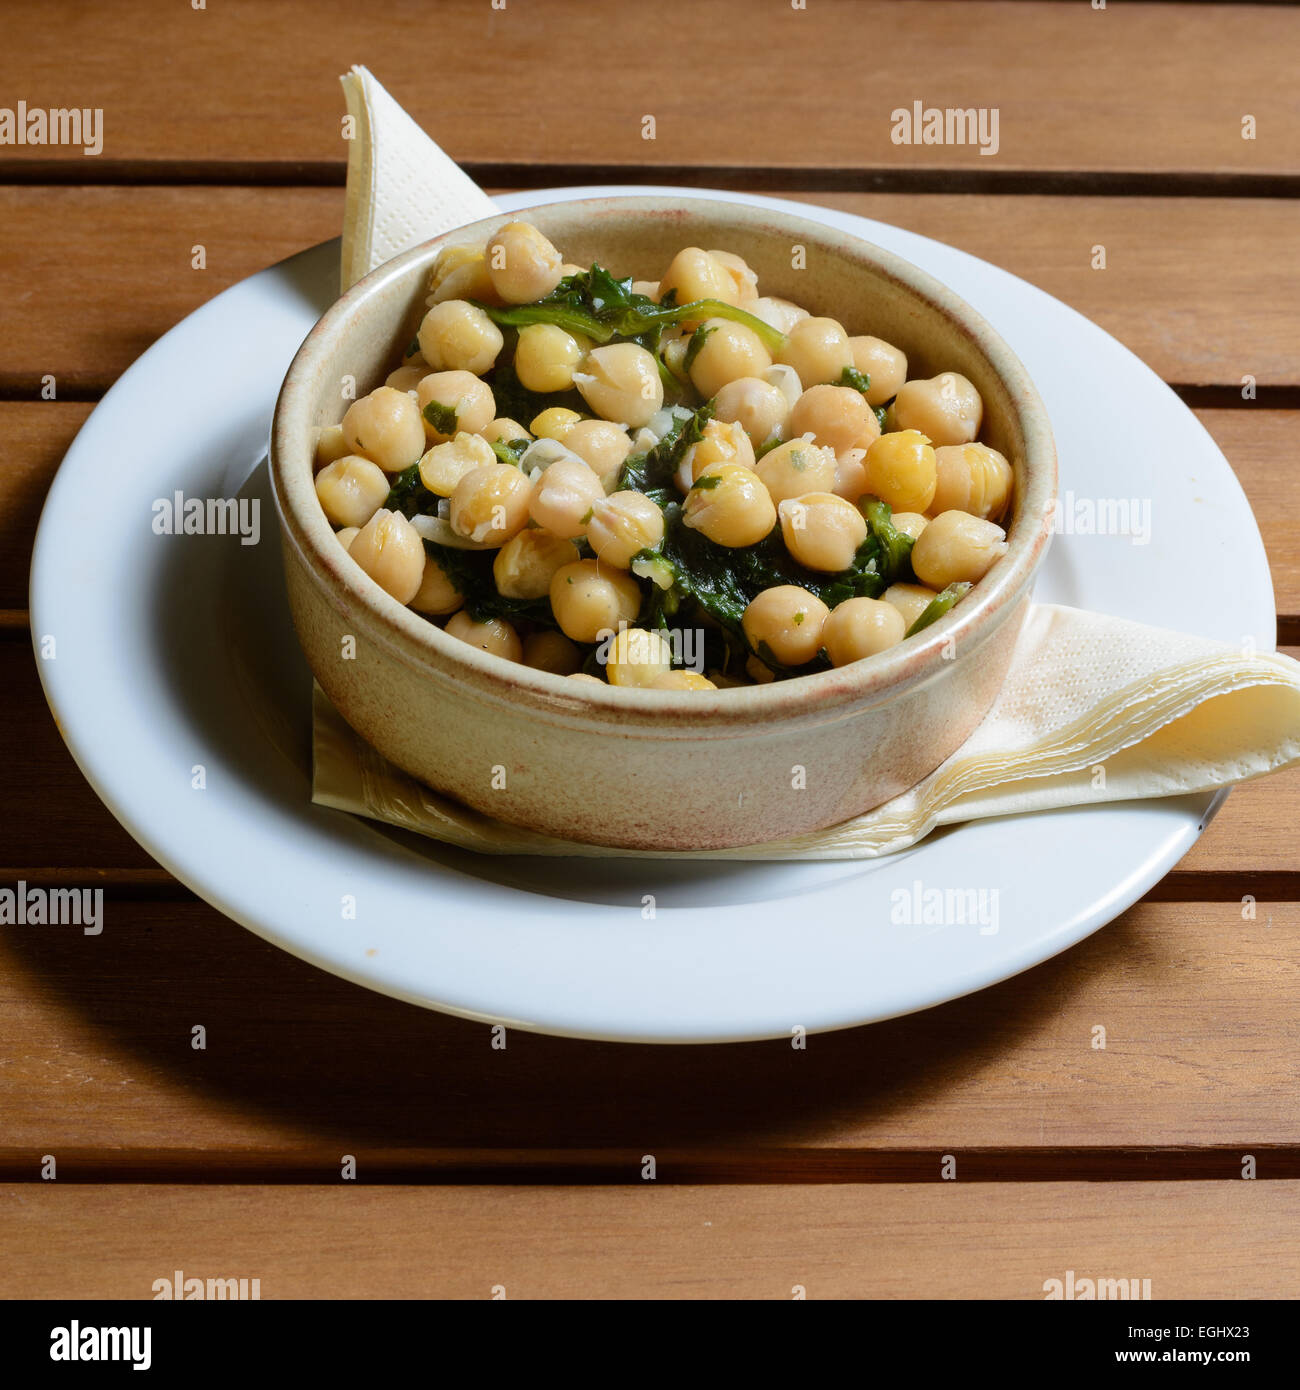 Tapas. Kichererbsen & Spinat gekocht eine würzige vorrätig, serviert in einer braunen Keramikschüssel auf einer hölzernen Tischplatte Stockfoto